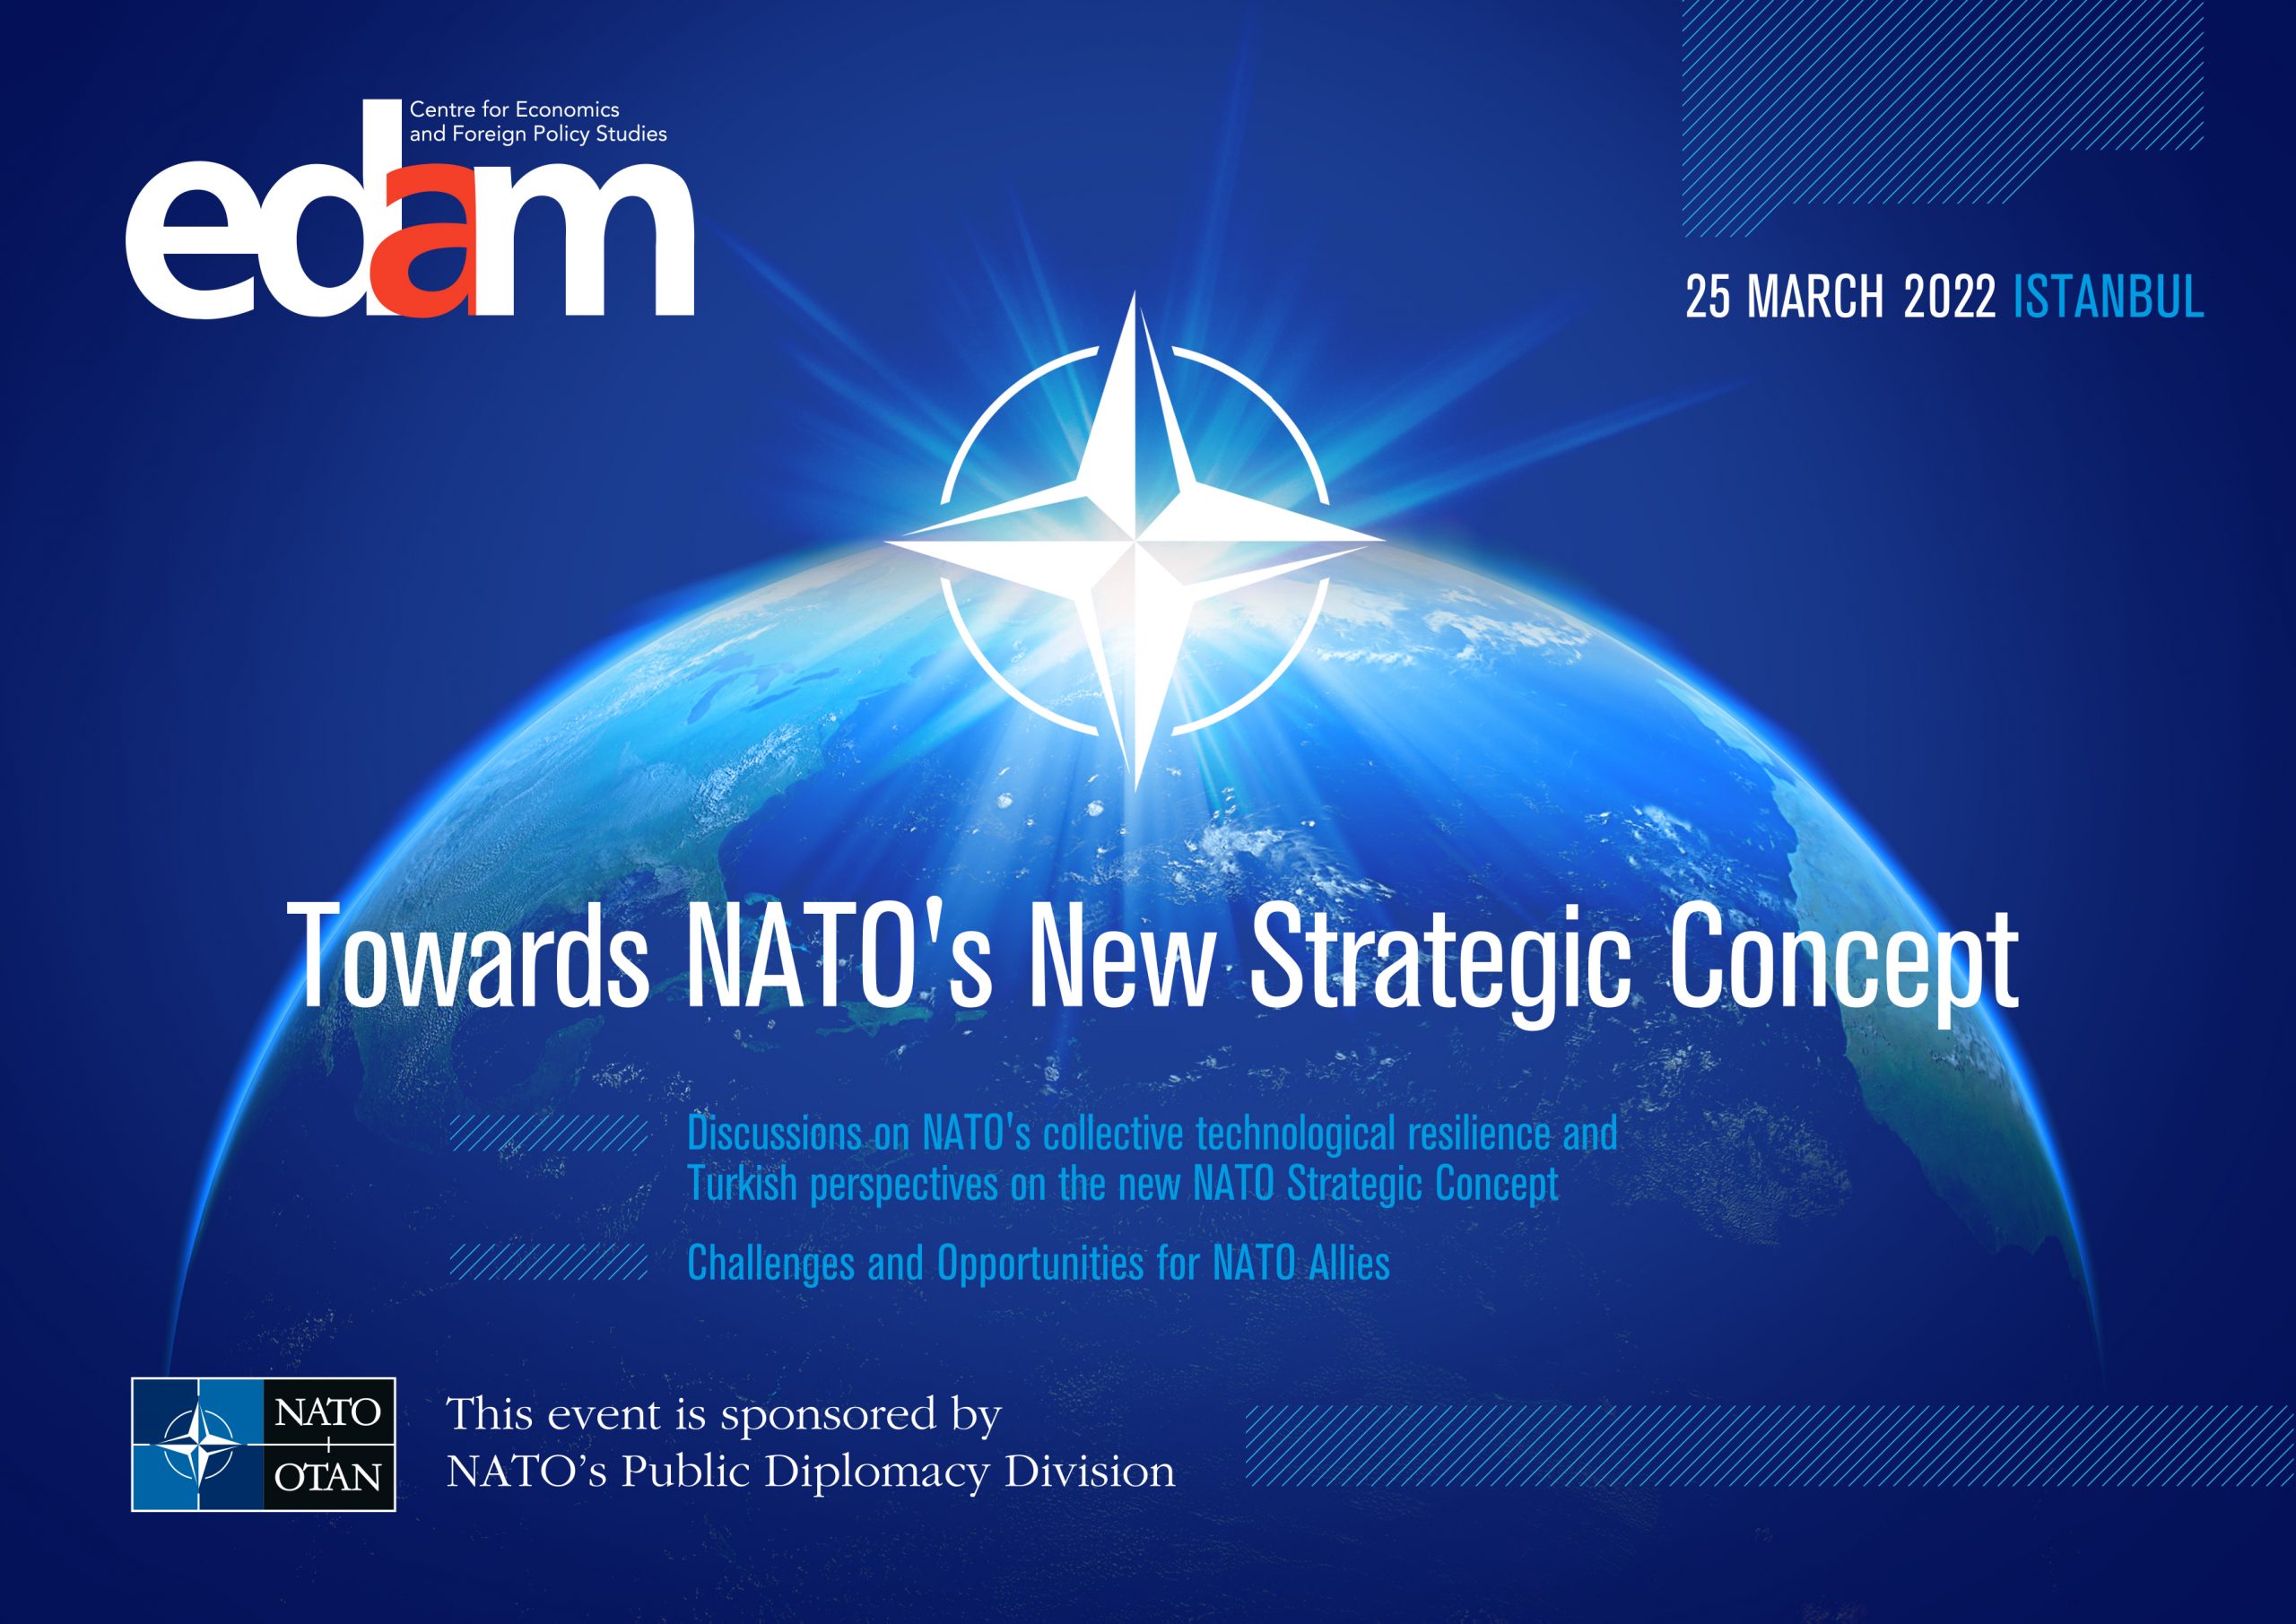 Towards a New NATO Strategic Concept